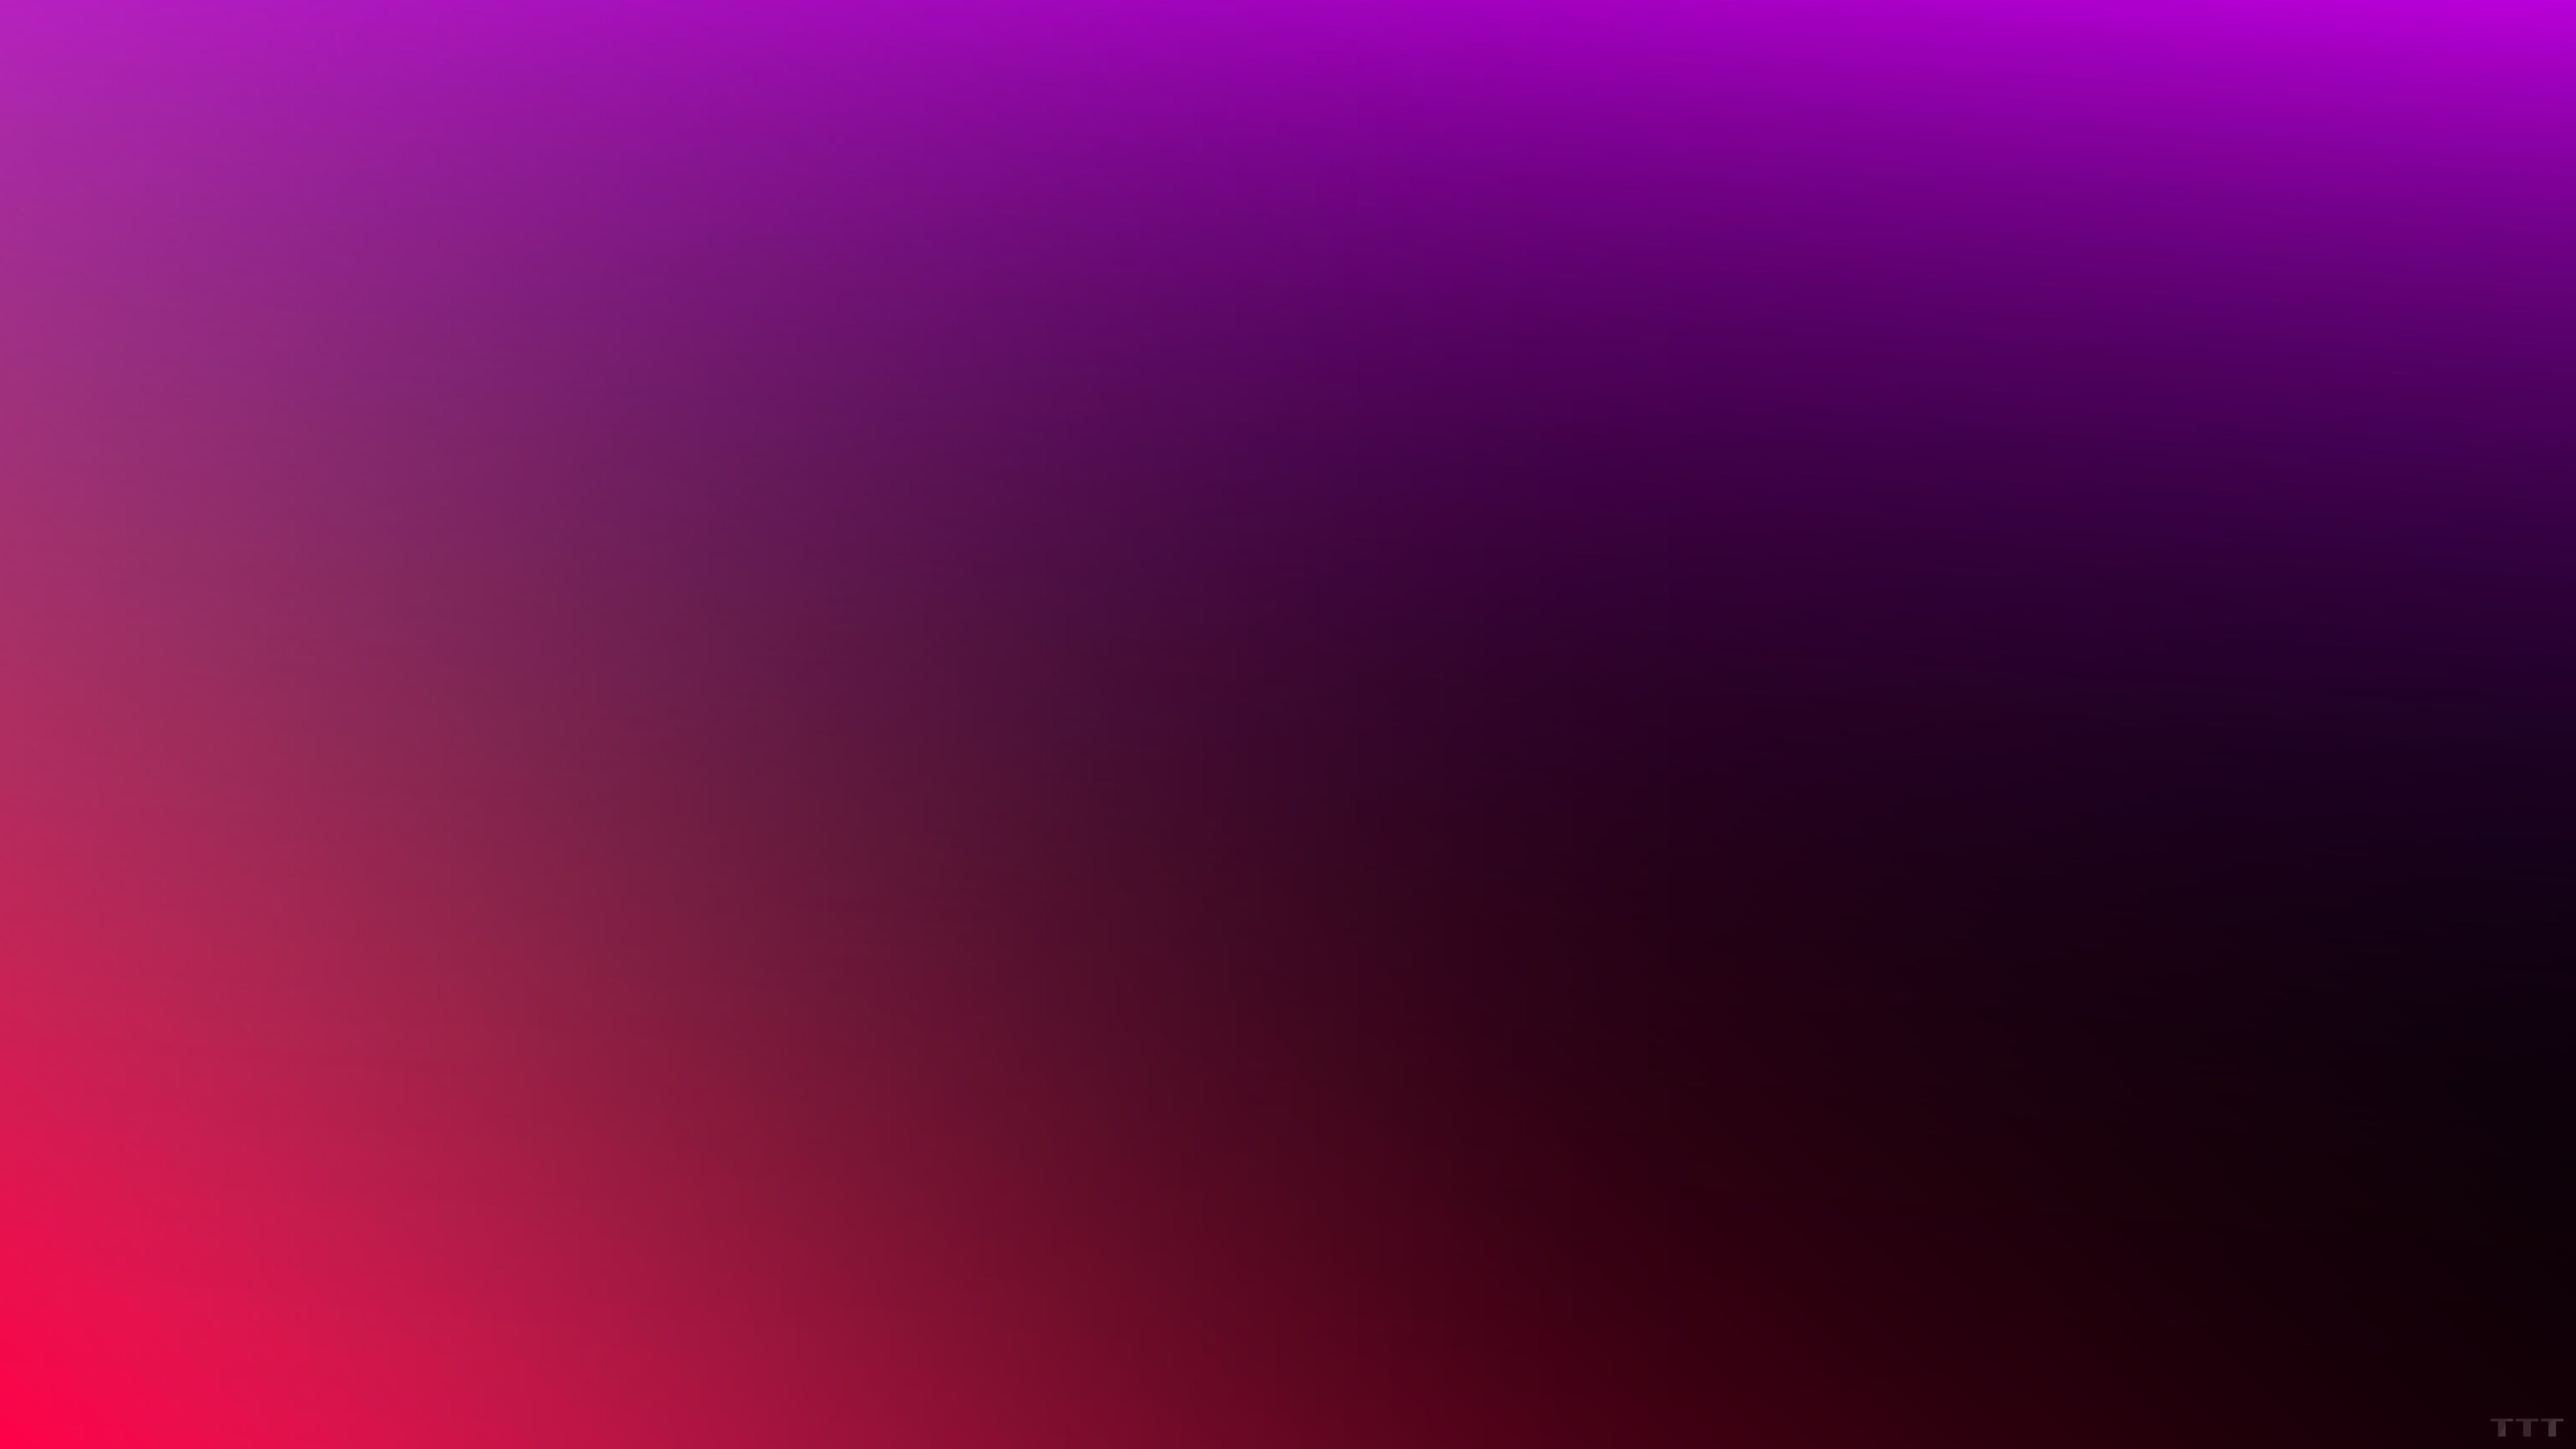 violet gradient #Abstract K #wallpaper #hdwallpaper #desktop. Color blur, Free background image, Blurred lights